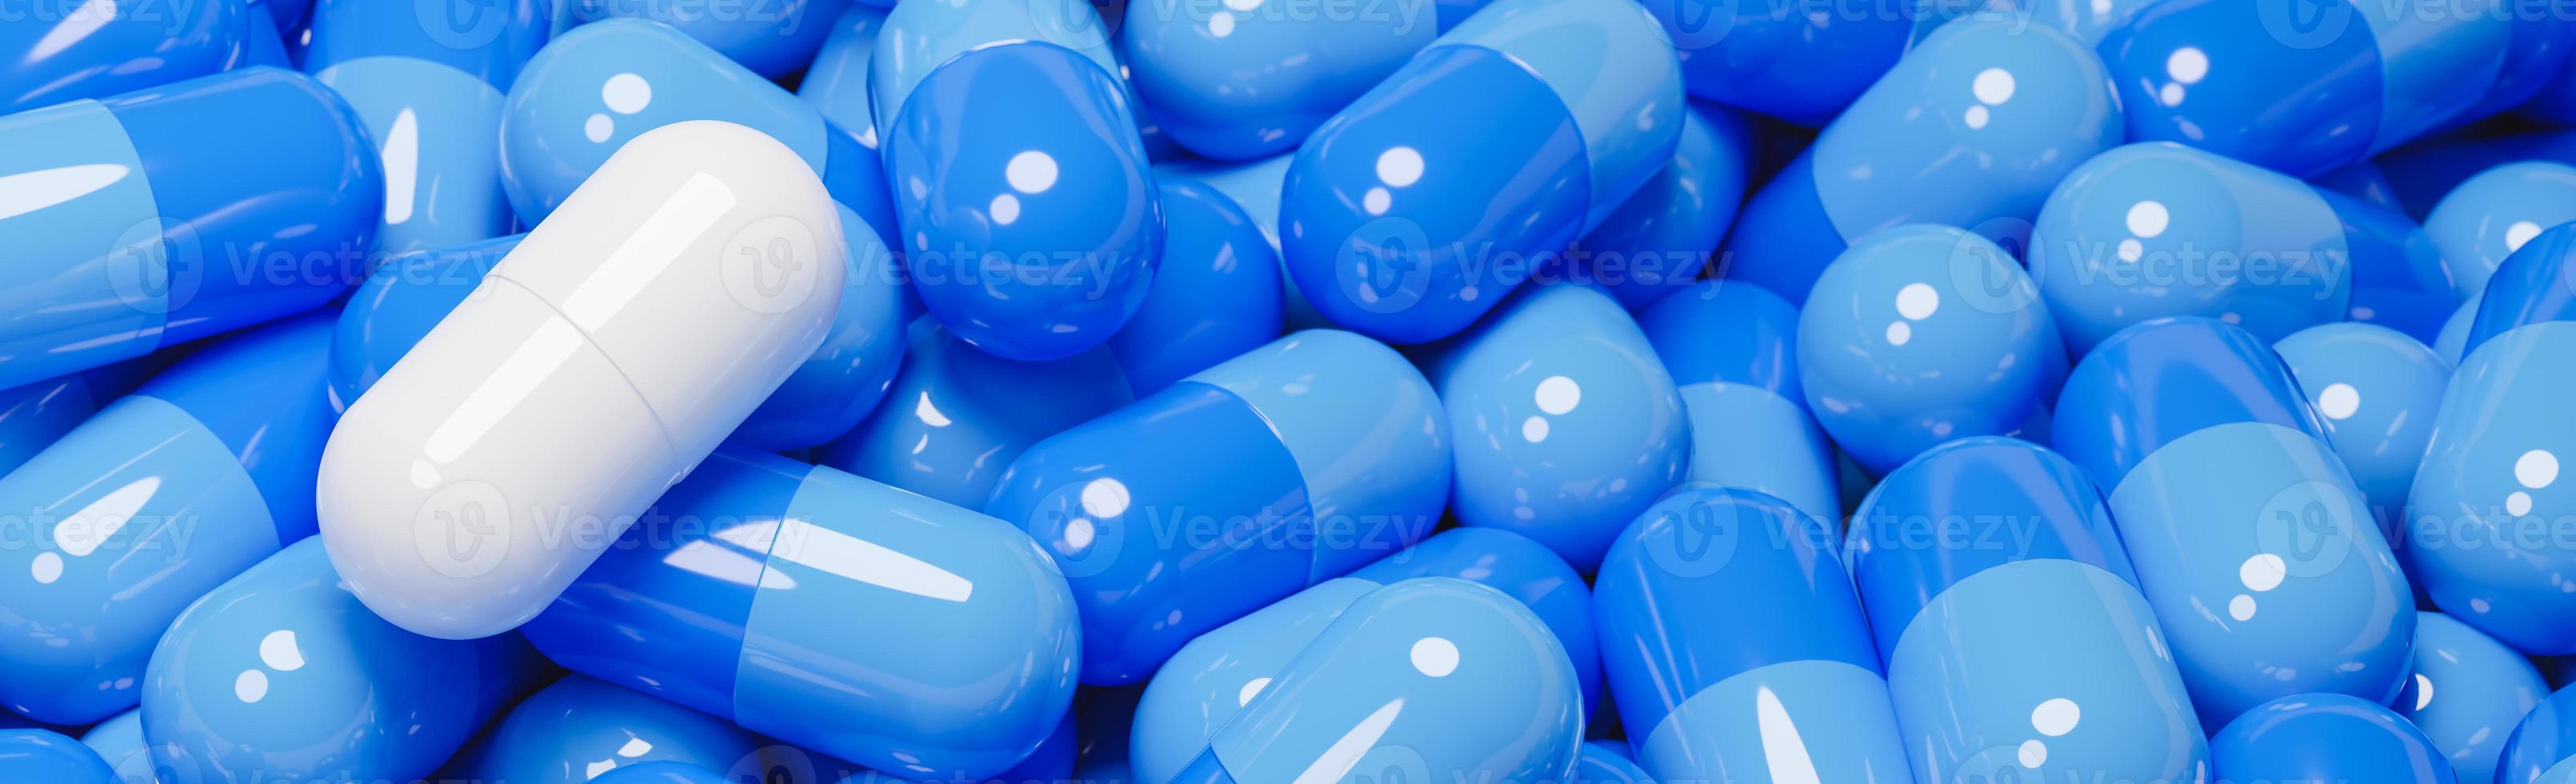 primo piano della capsula della pillola bianca in molte capsule blu delle pillole. concetto di medicina e specialità farmaceutiche.,Modello 3d e illustrazione. foto